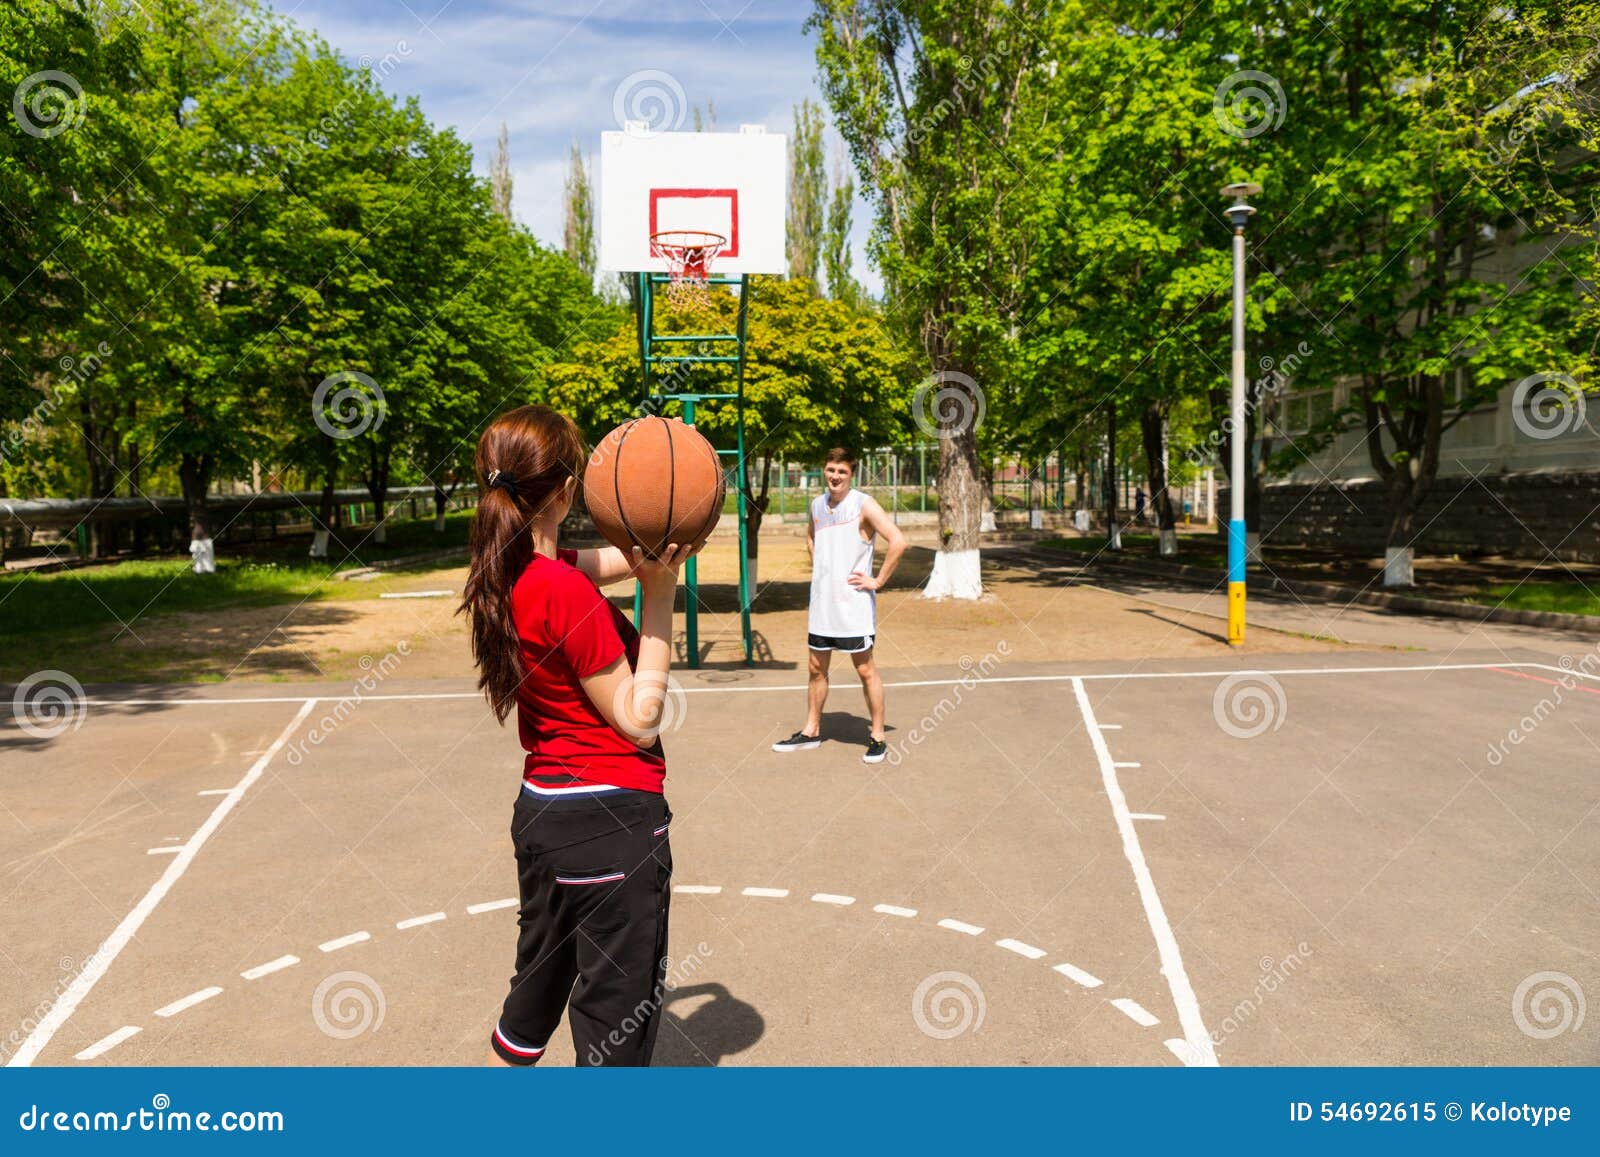 Мальчик на спортивной площадке. Баскетбол уличный девушки. Парень и девушка на баскетбольной площадке. Девушка на спортивной площадке. Девушка на баскетбольной площадке.